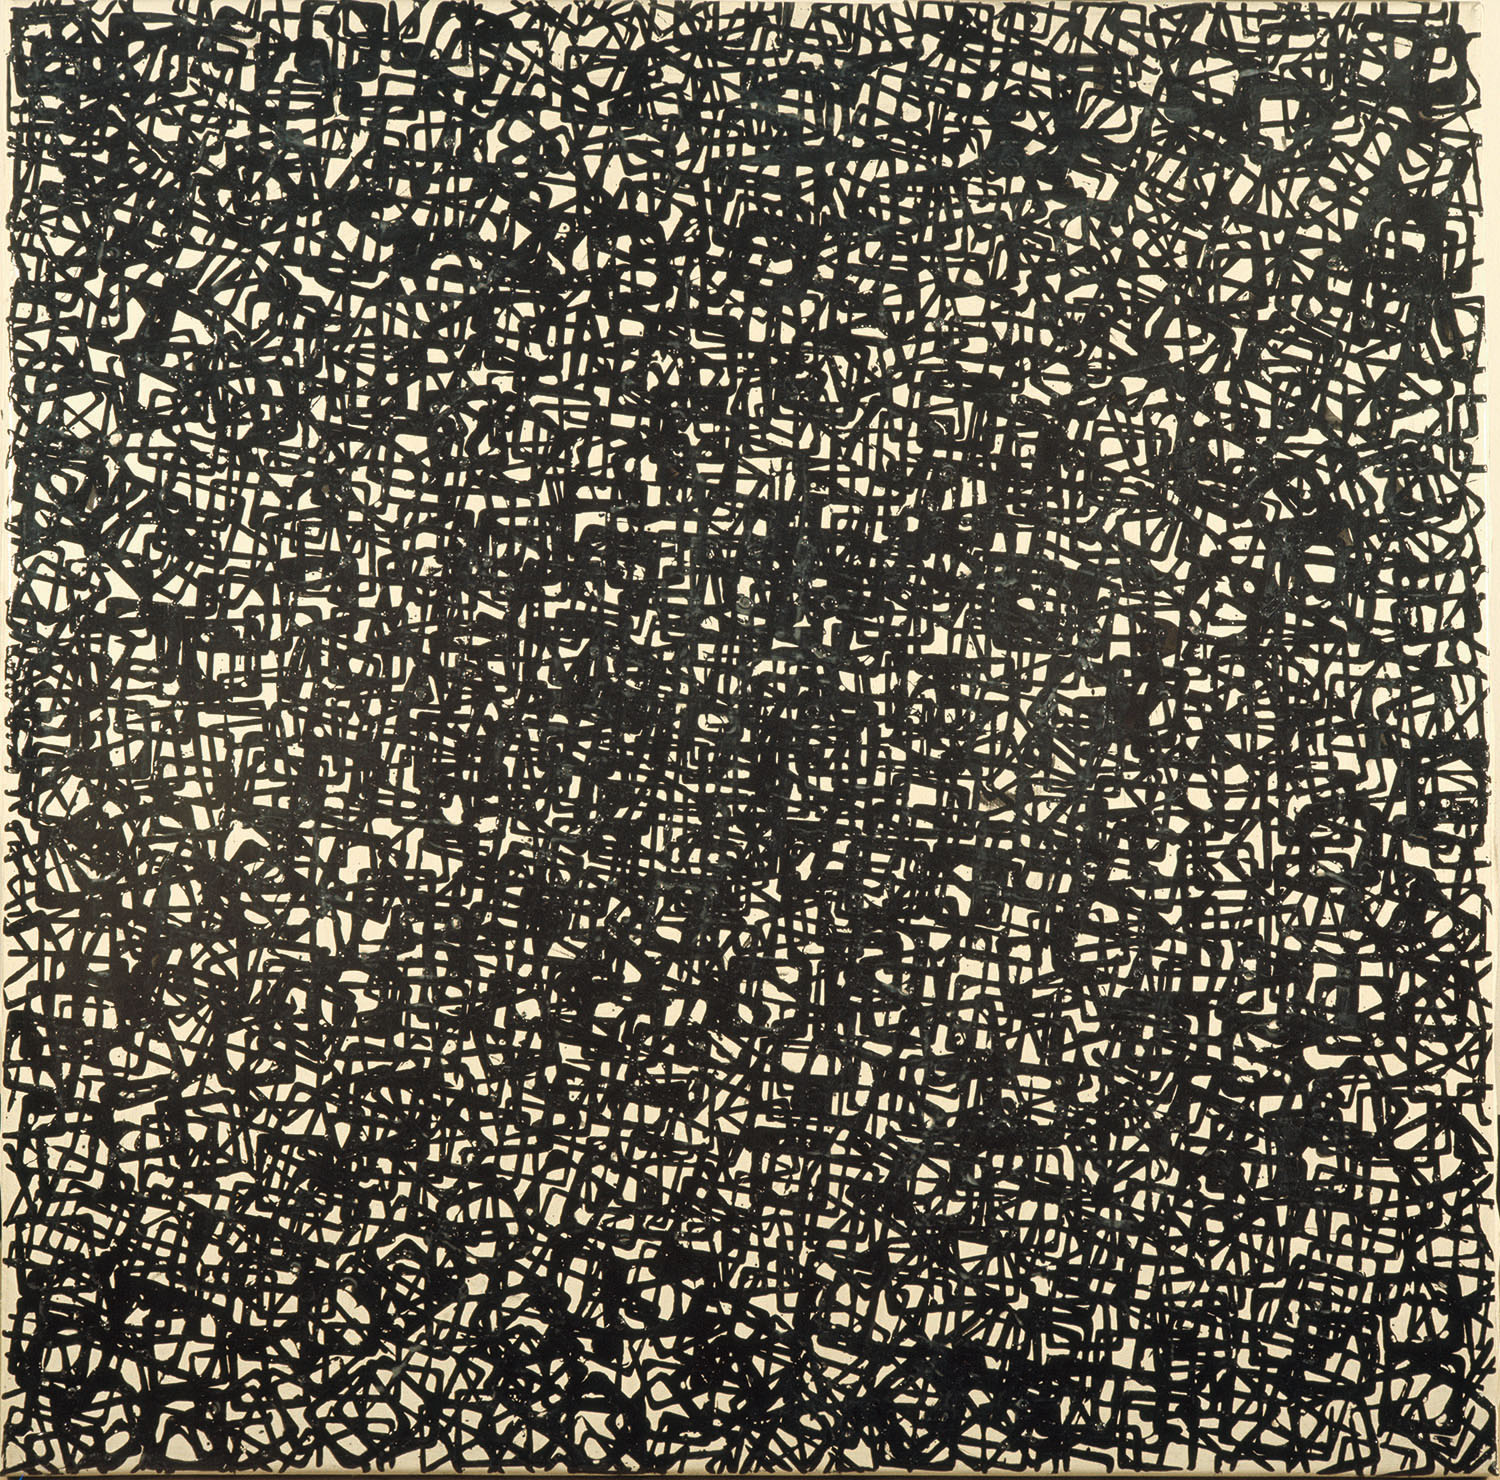 cinética, 1974, óleo sobre tela, cm 110 x 110